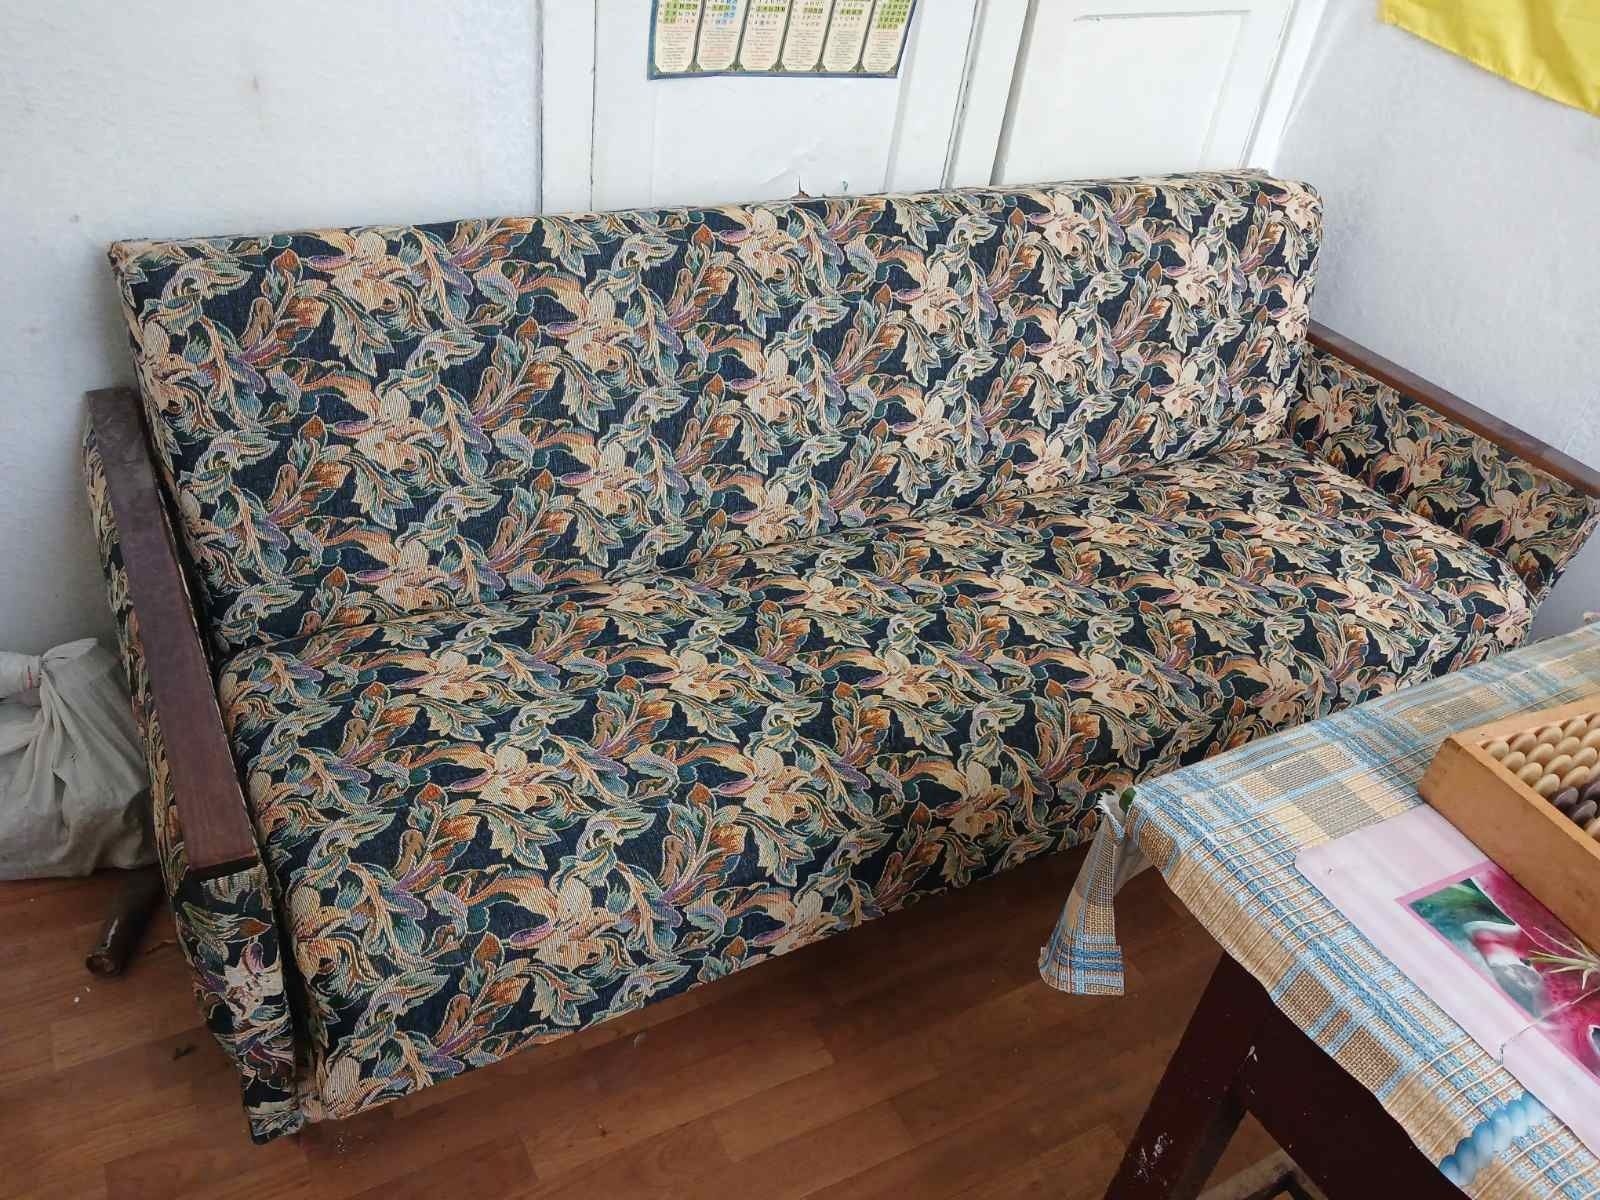 Продается диван духспальный раскладной.